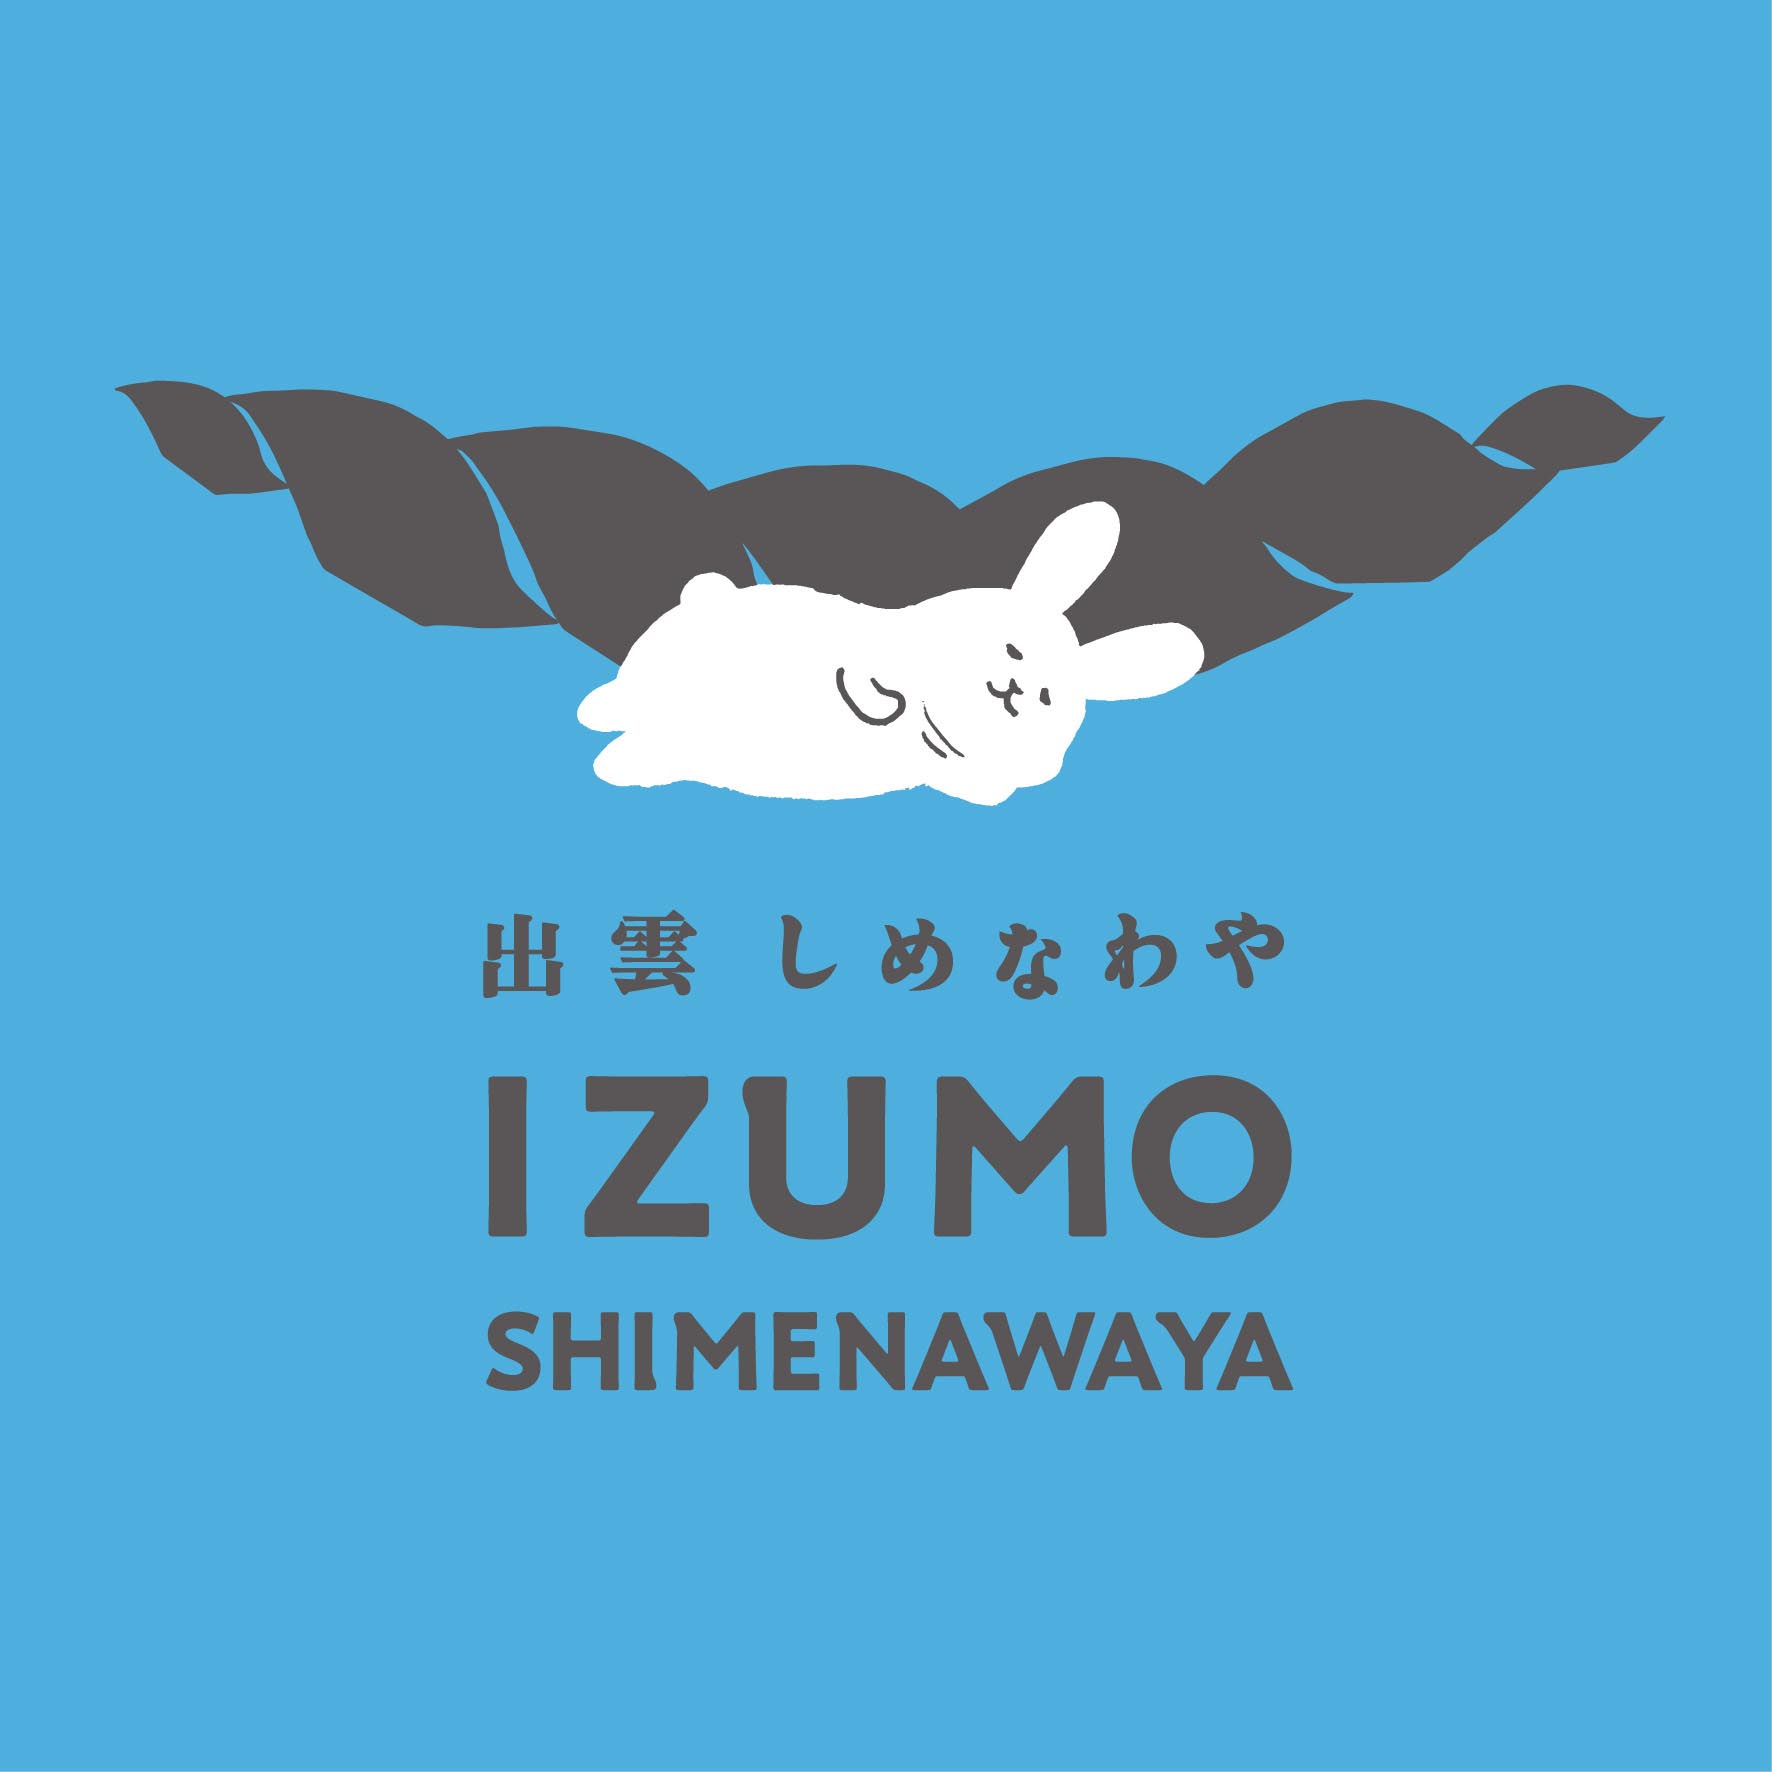 IZUMO SHIMENAWAYA